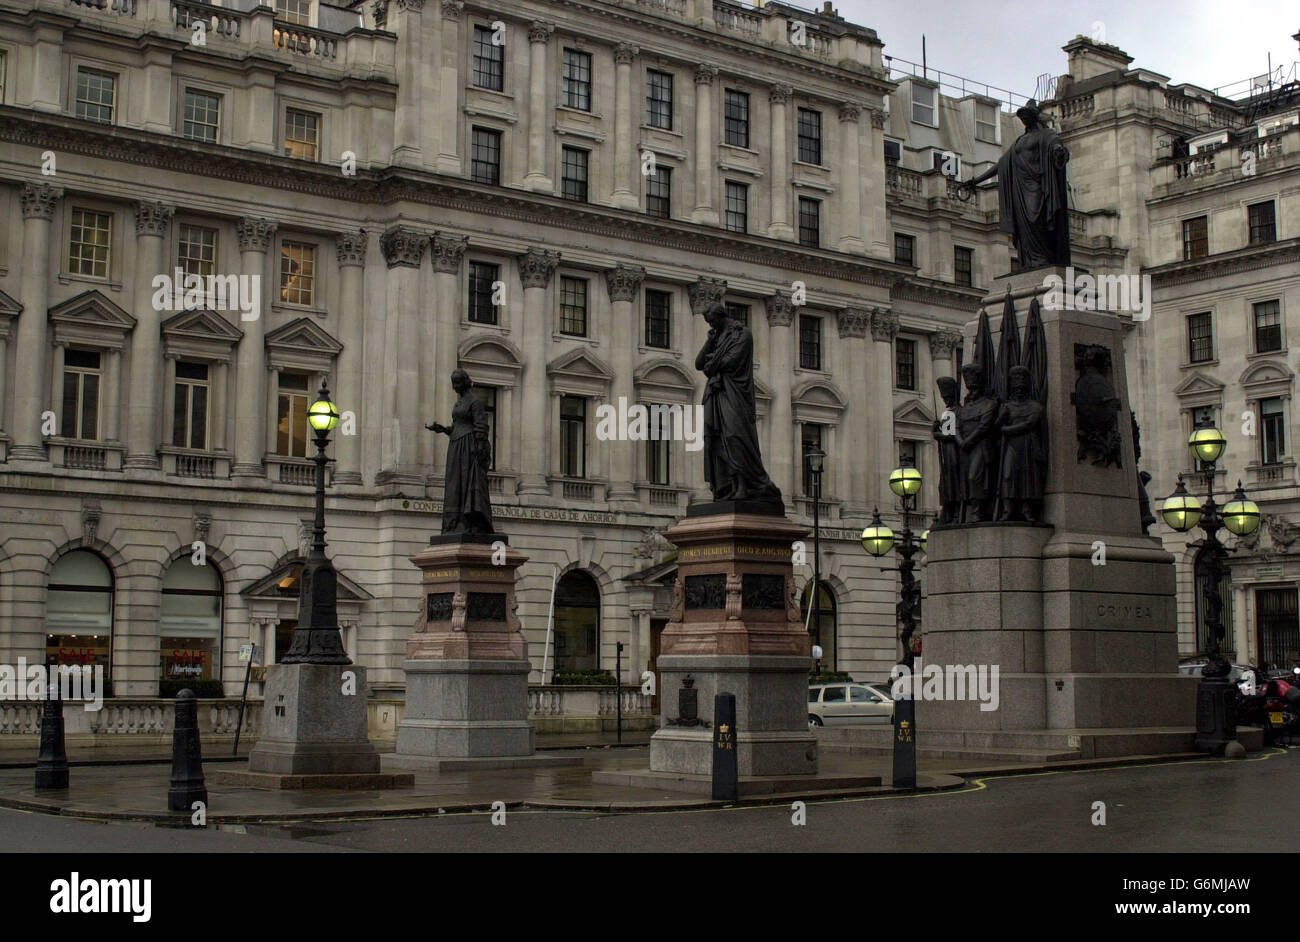 El Crimean War Memorial está situado en el cruce entre Lower Regent Street y Pall Mall en Londres. El monumento incluye una estatua de la famosa "Señora con la lámpara", Florence Nightingale, así como para aquellos que cayeron en la batalla contra los rusos en Sebastopol. Foto de stock